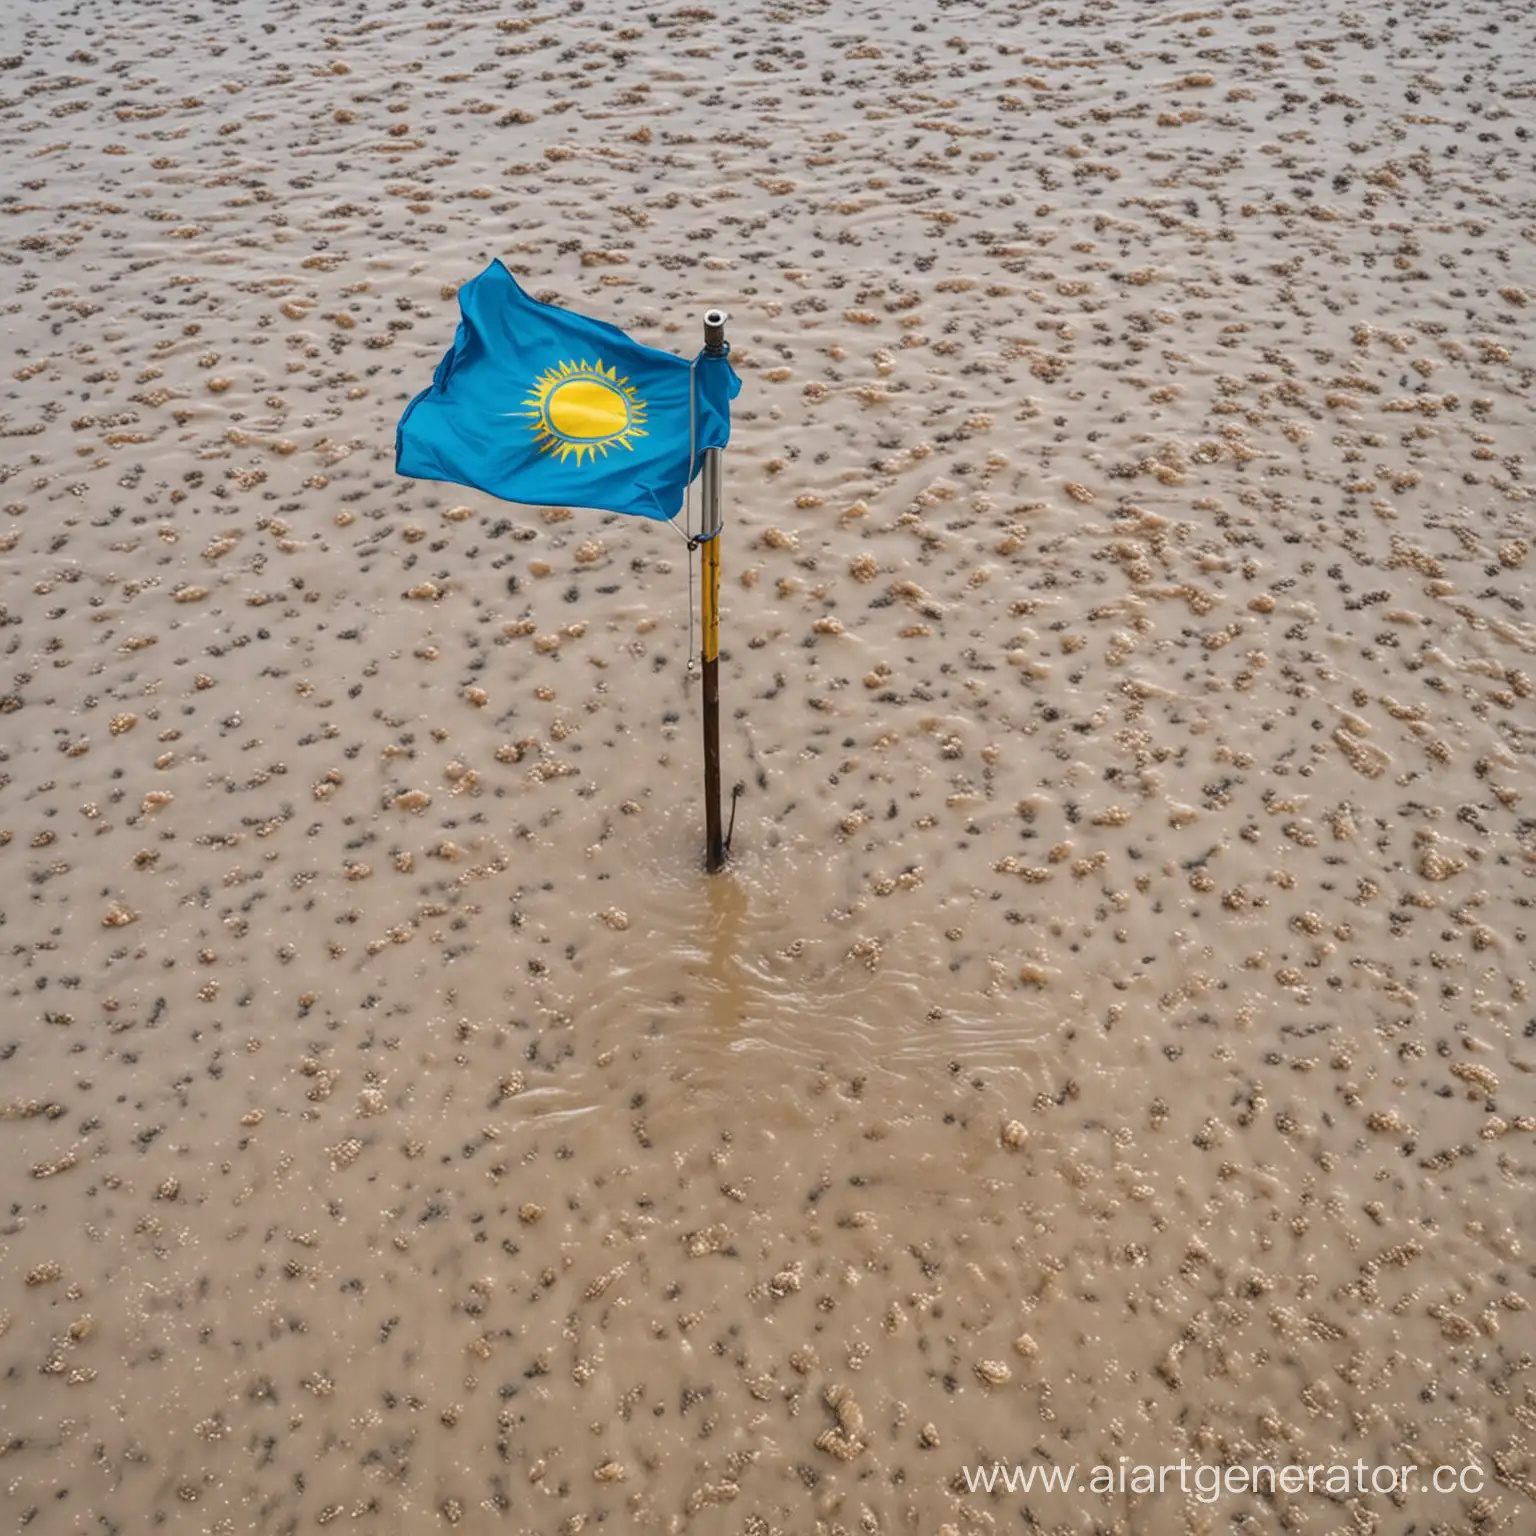 потоп в казахстане с флагом

